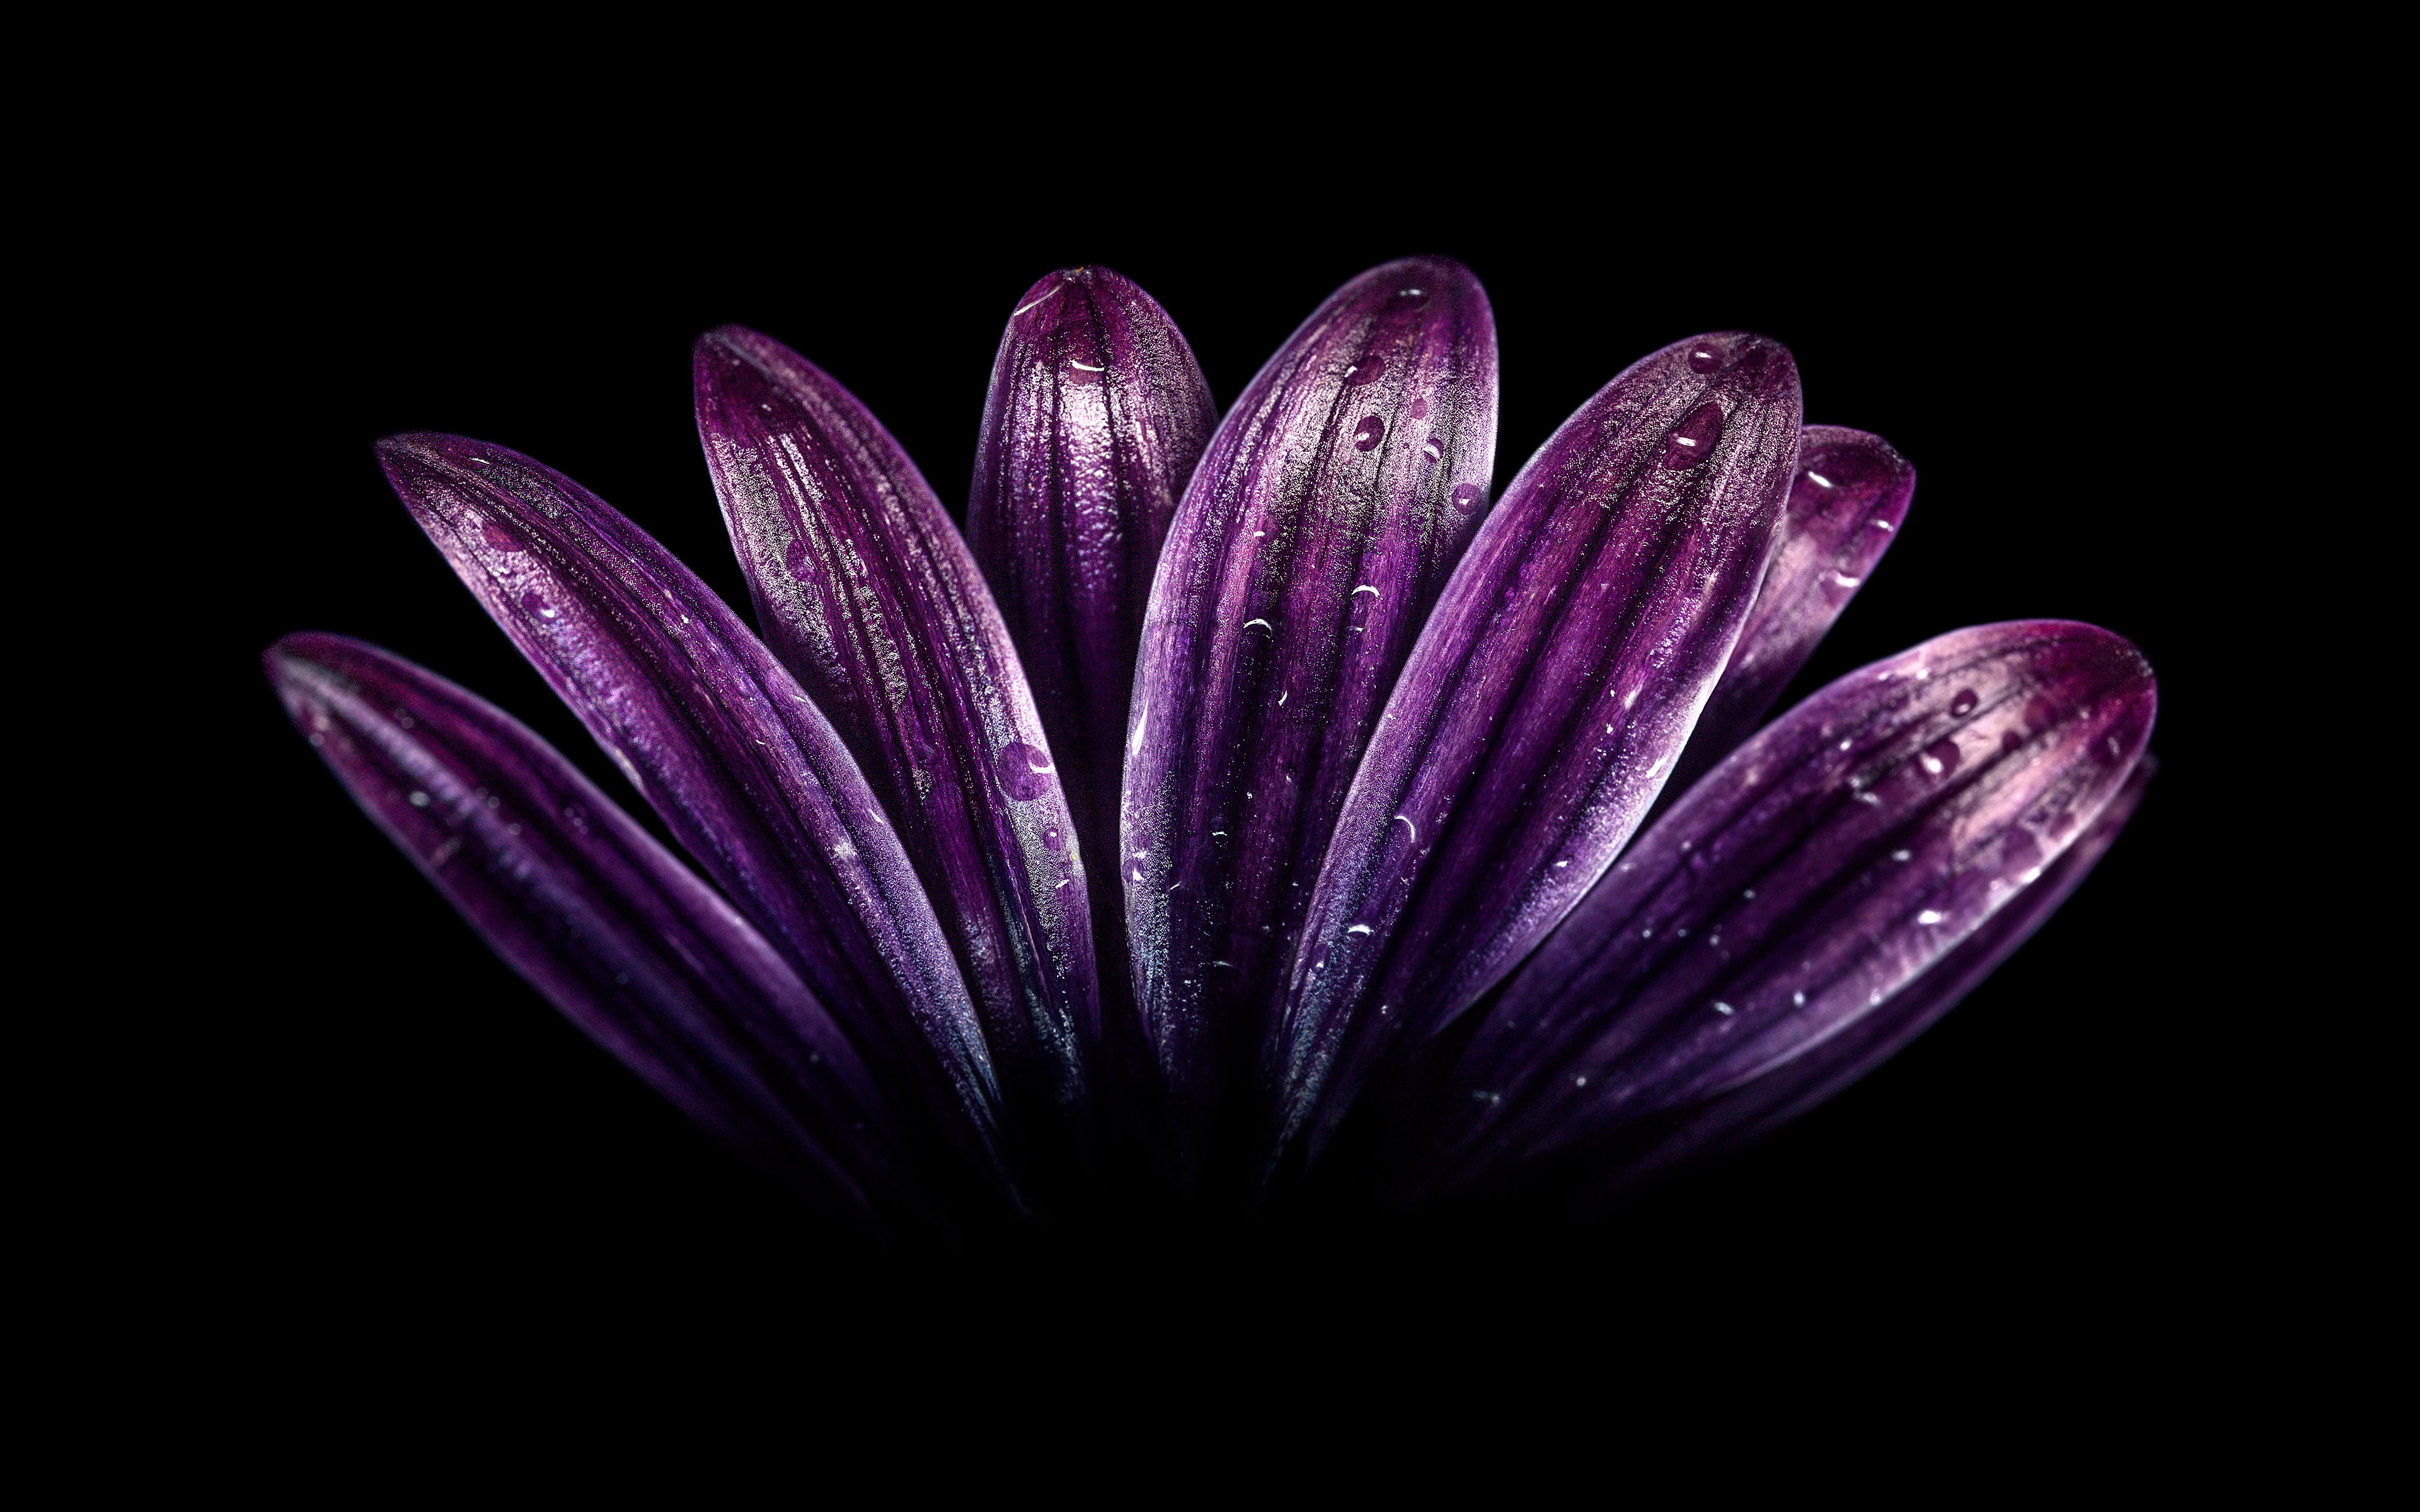 Dark Purple Flower 4K, studio shot, black background, close-up